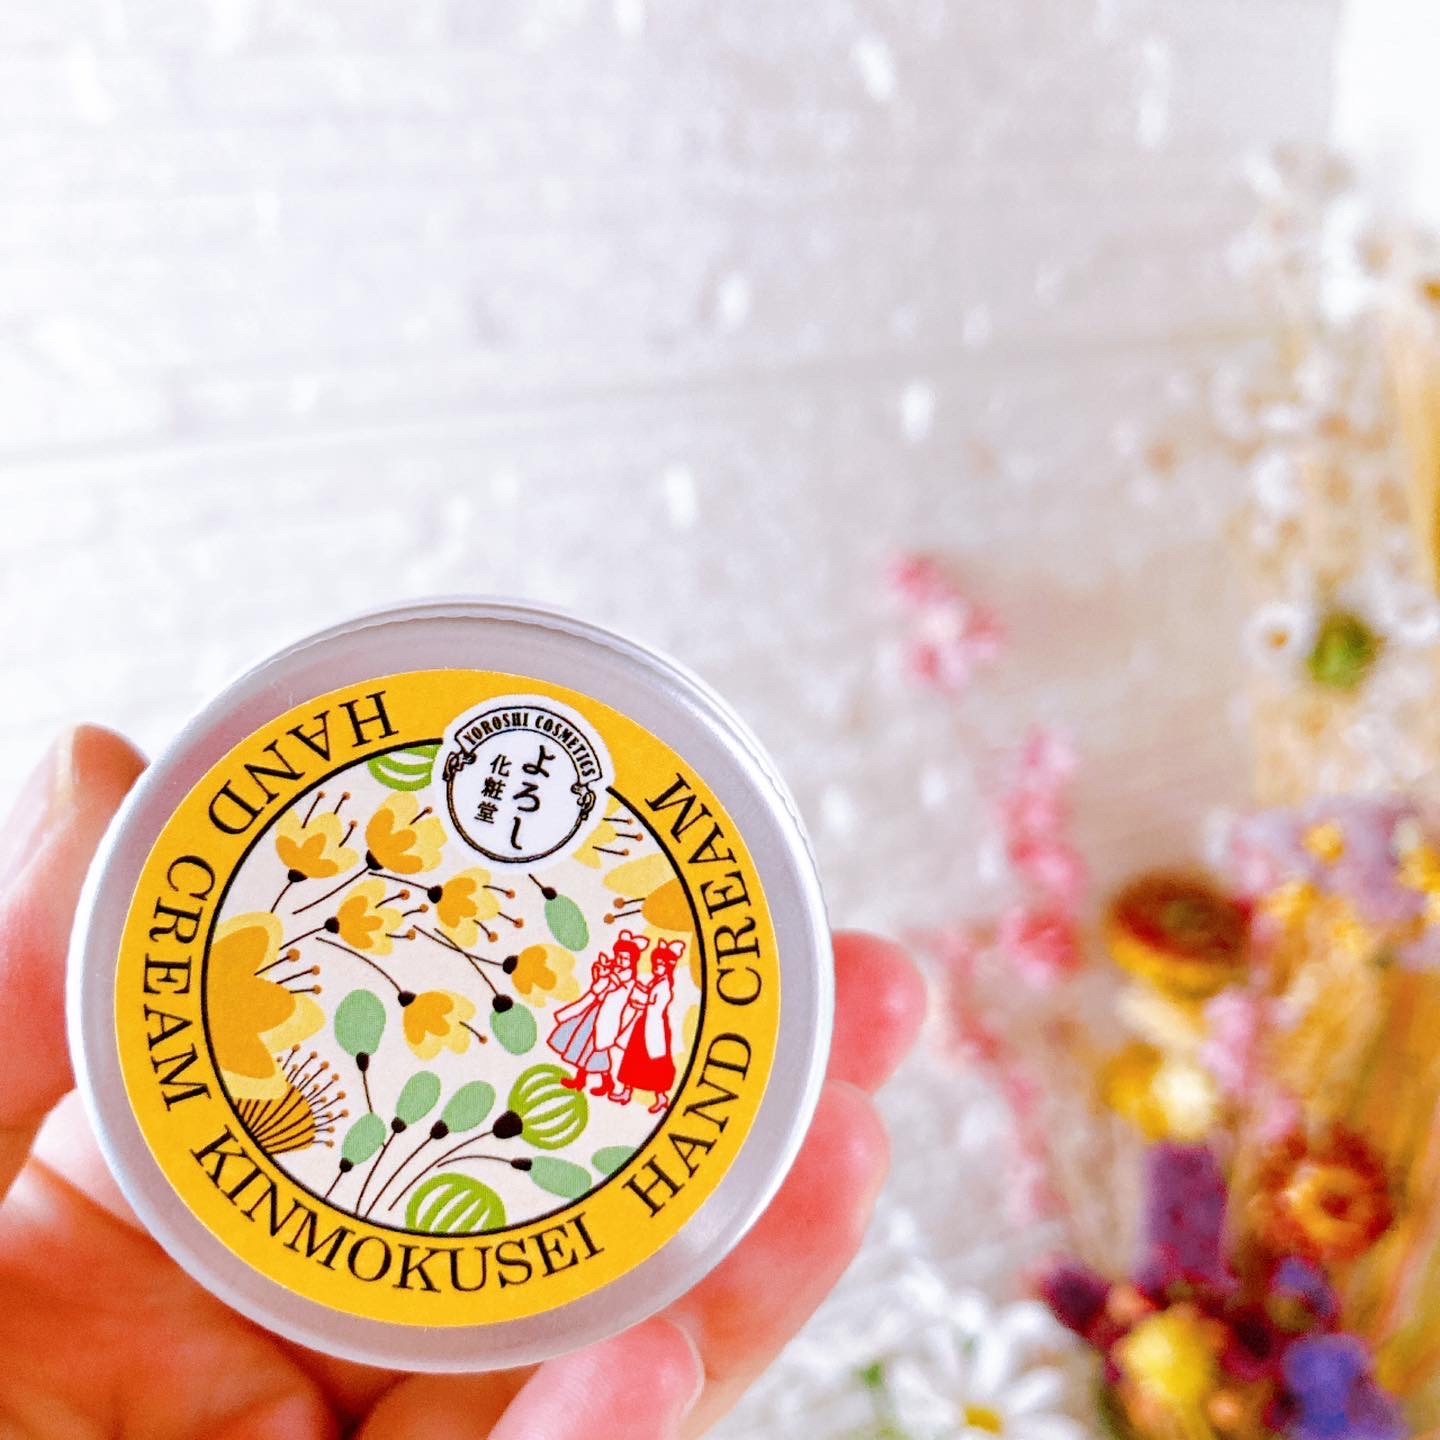 よろし化粧品ハンドクリーム金木犀の香り 1100円を使ったメグさんのクチコミ画像5